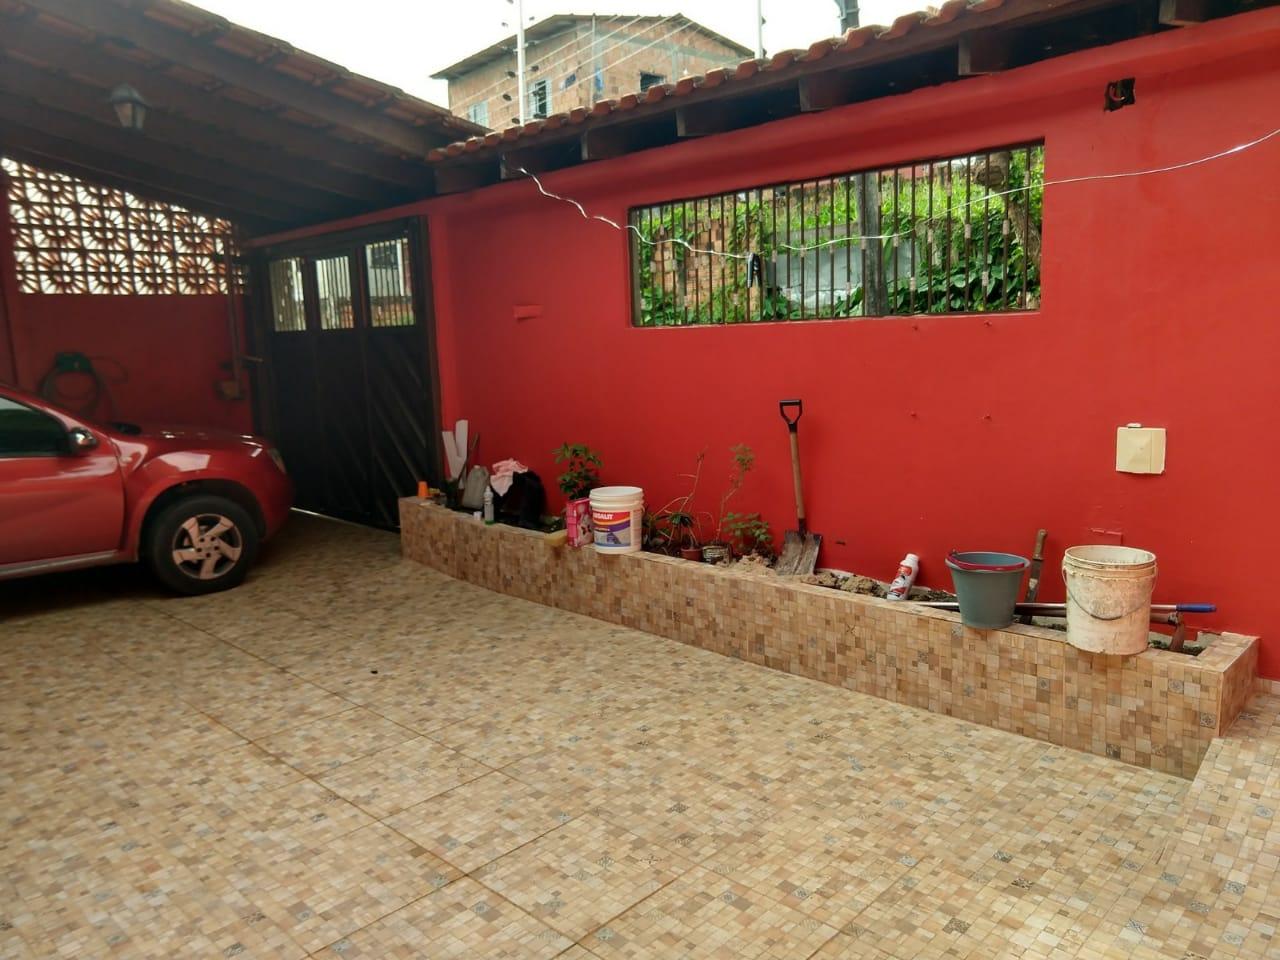 Casa com 4 dormitórios à venda, 500 m² por RS 650.000 - Bairro da Paz - Manaus-AM